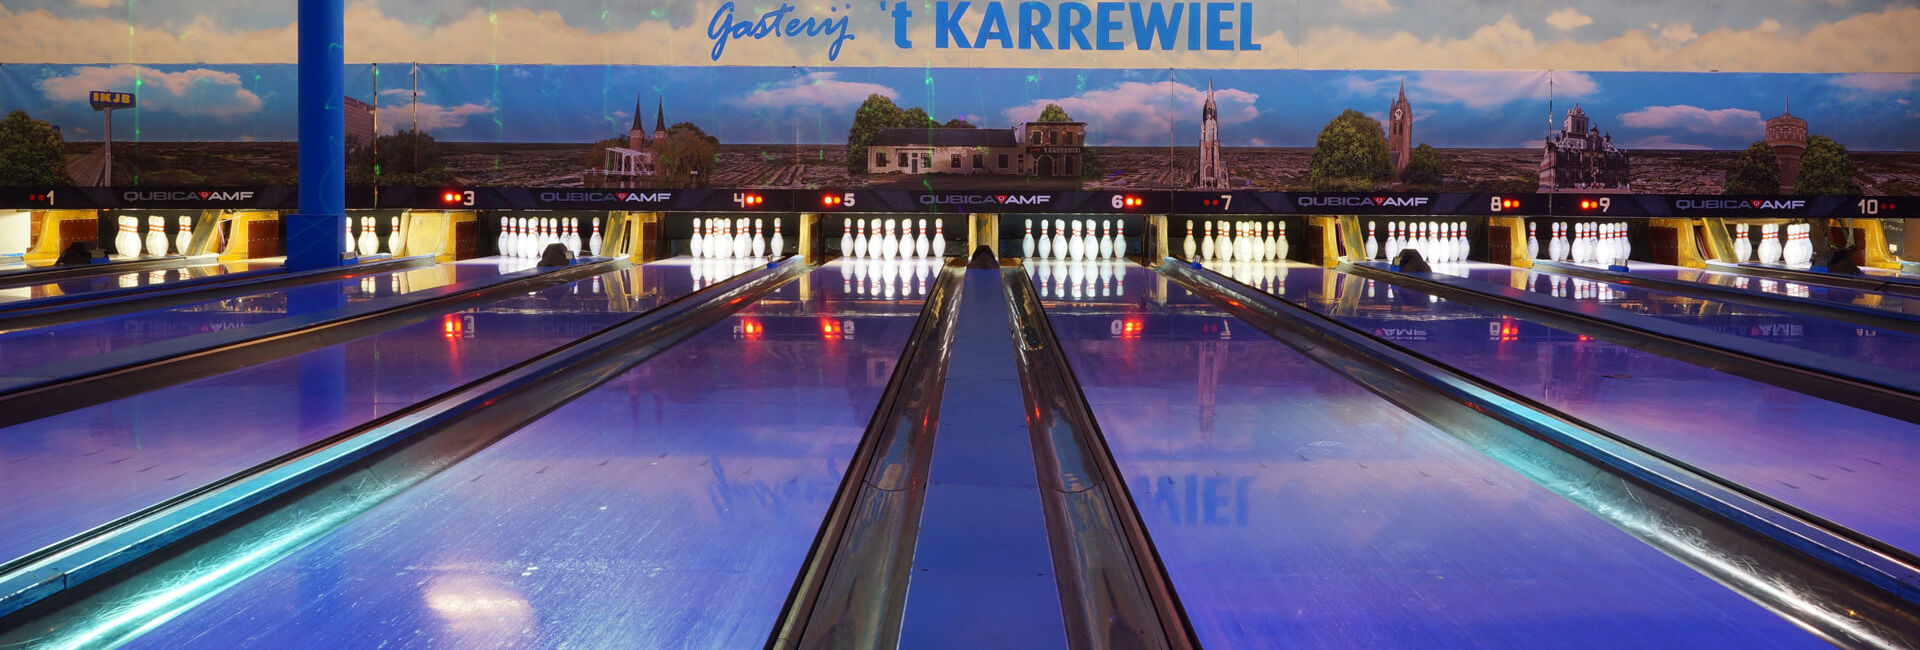 Bowlingbanen Gasterij 't Karrewiel - Downloads